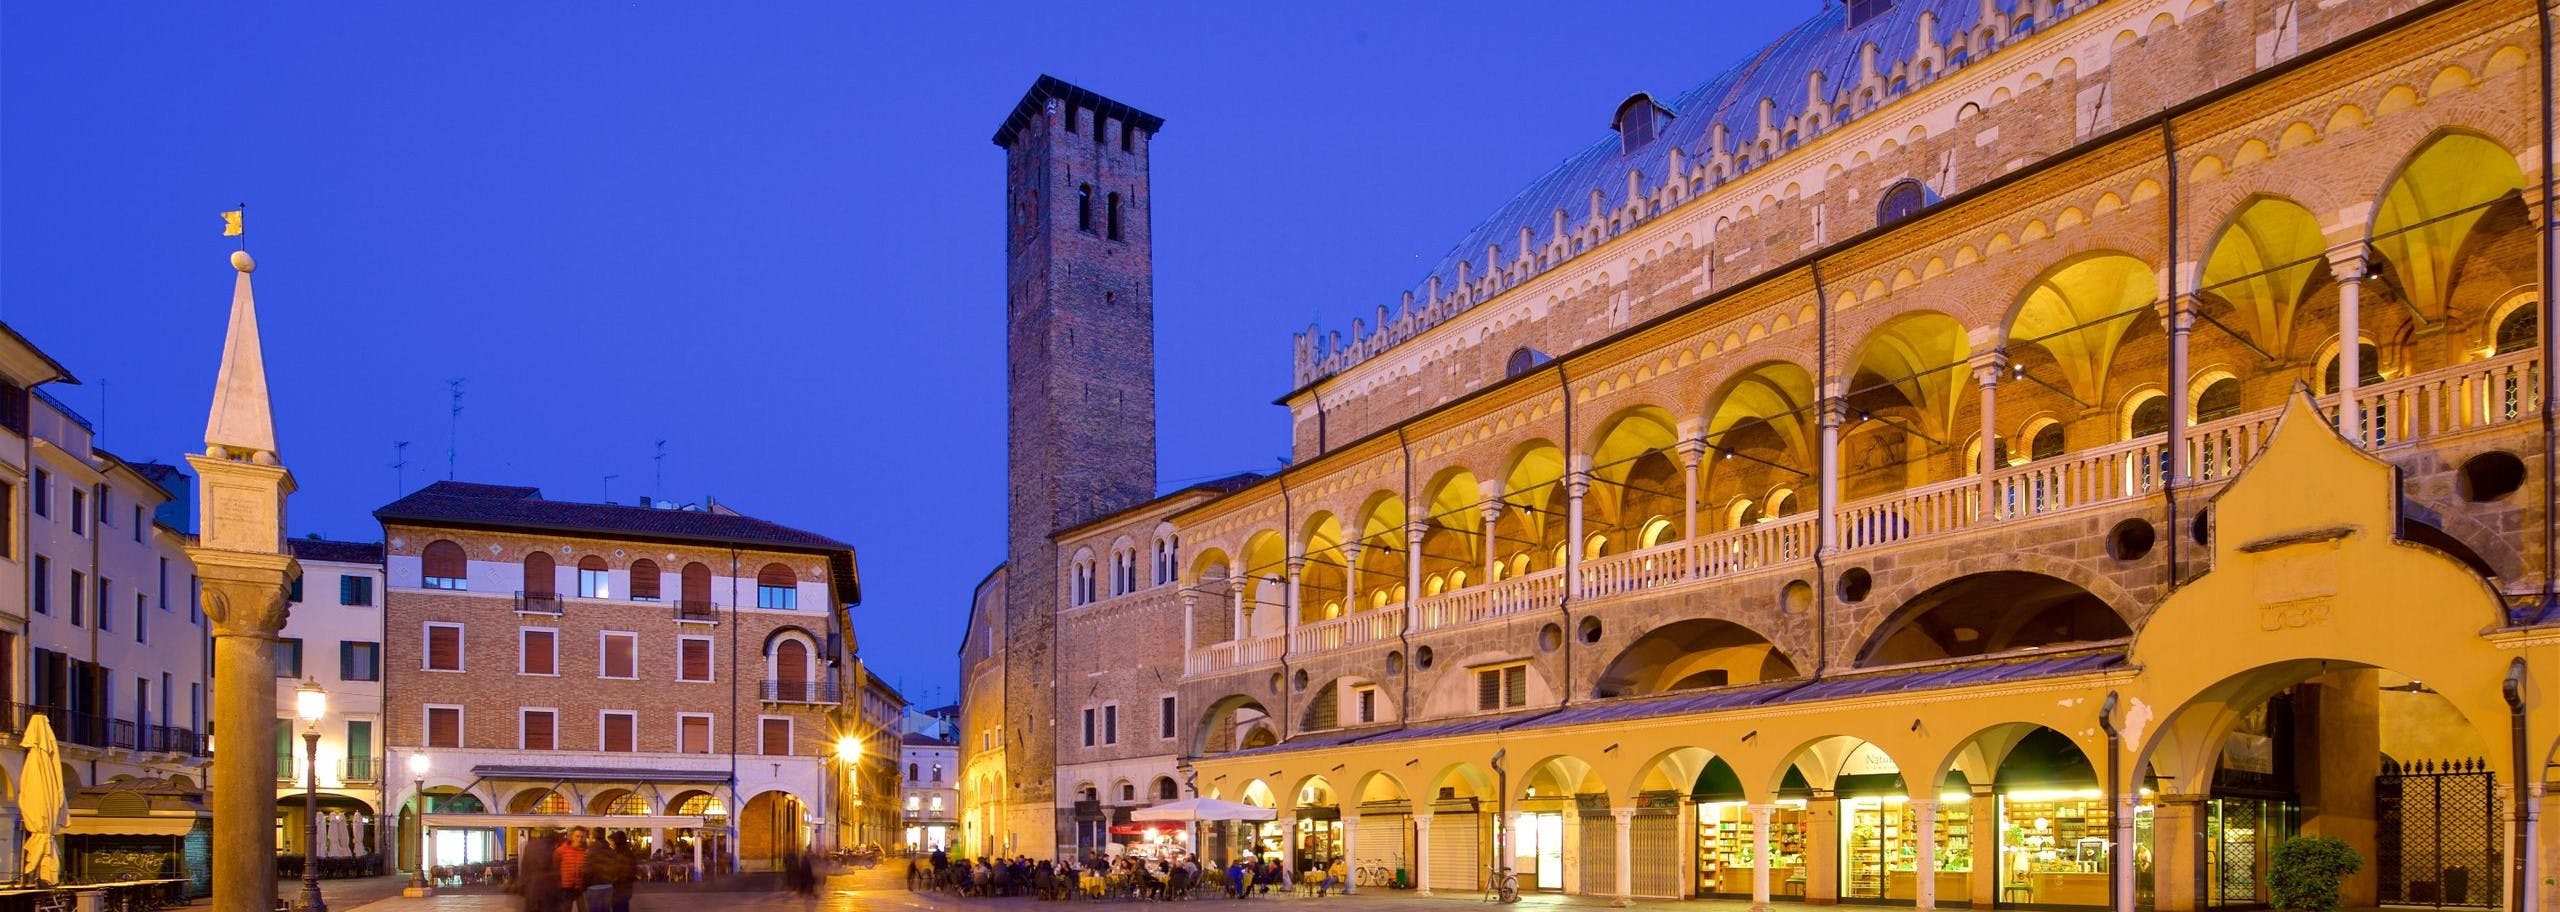 Una vista panoramica del centro storico di Padova